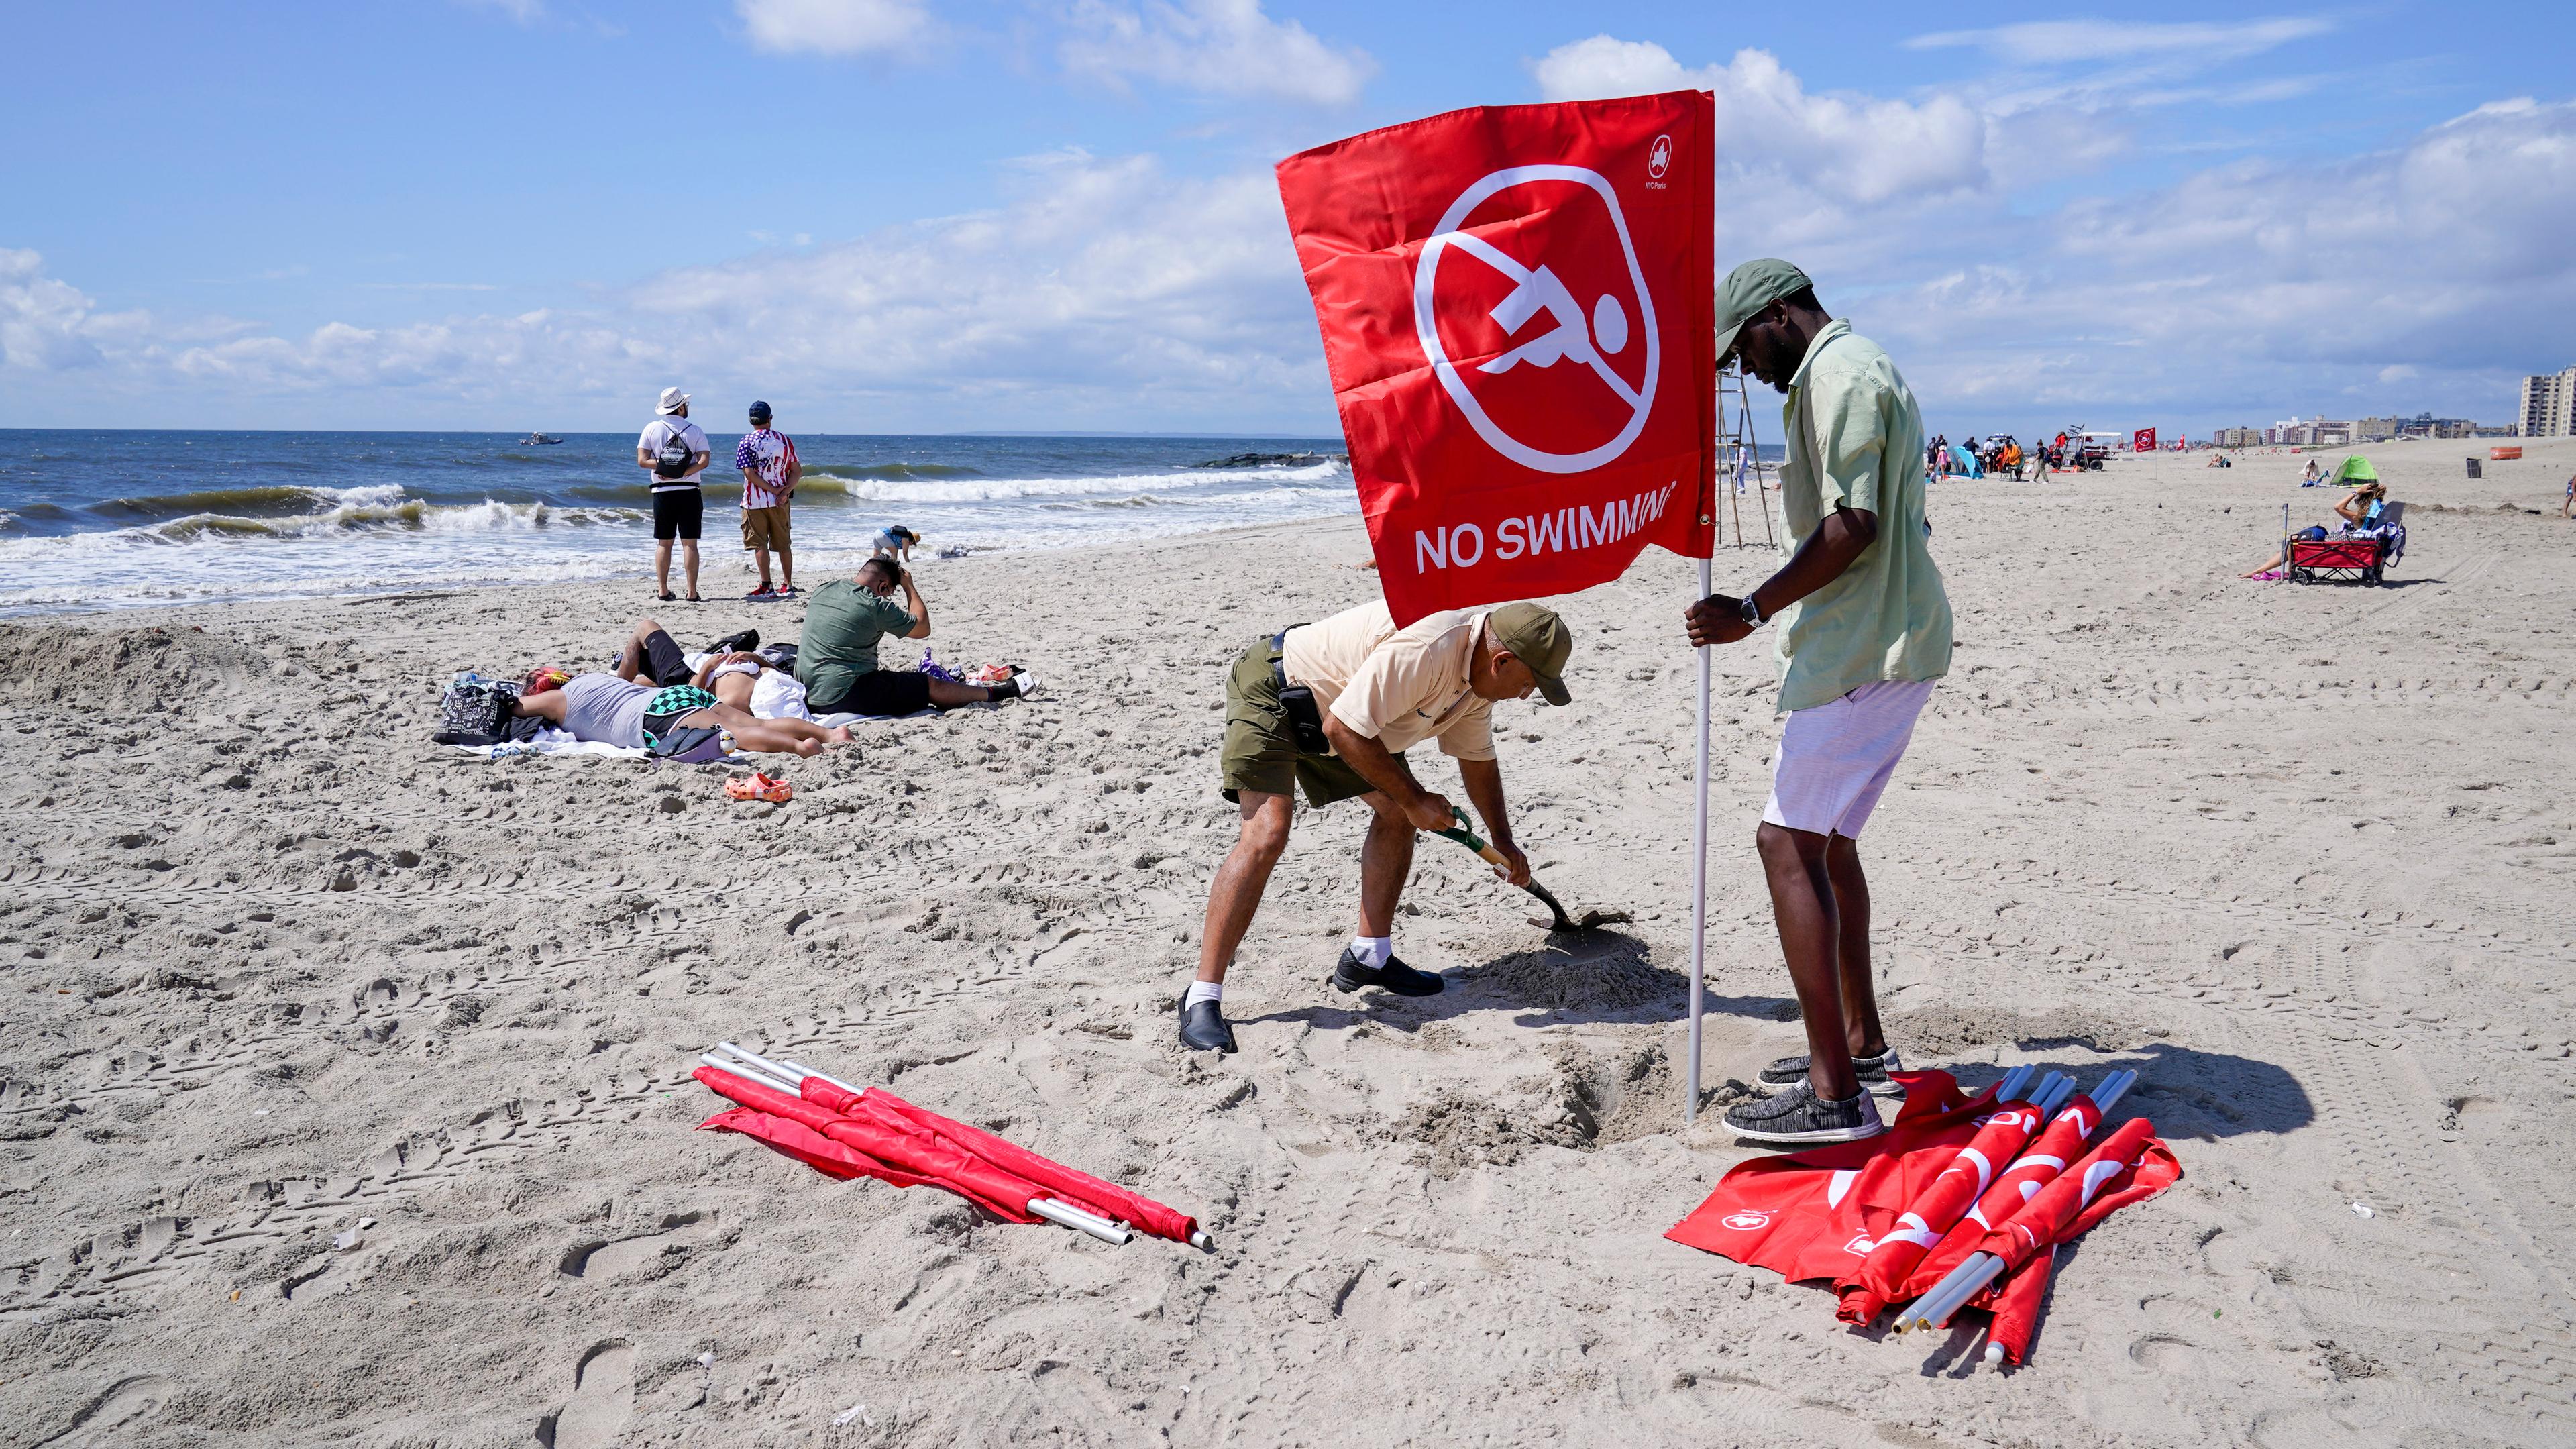 Männer stellen rote Flaggen mit der Aufschrift "No swimming" am Strand auf.